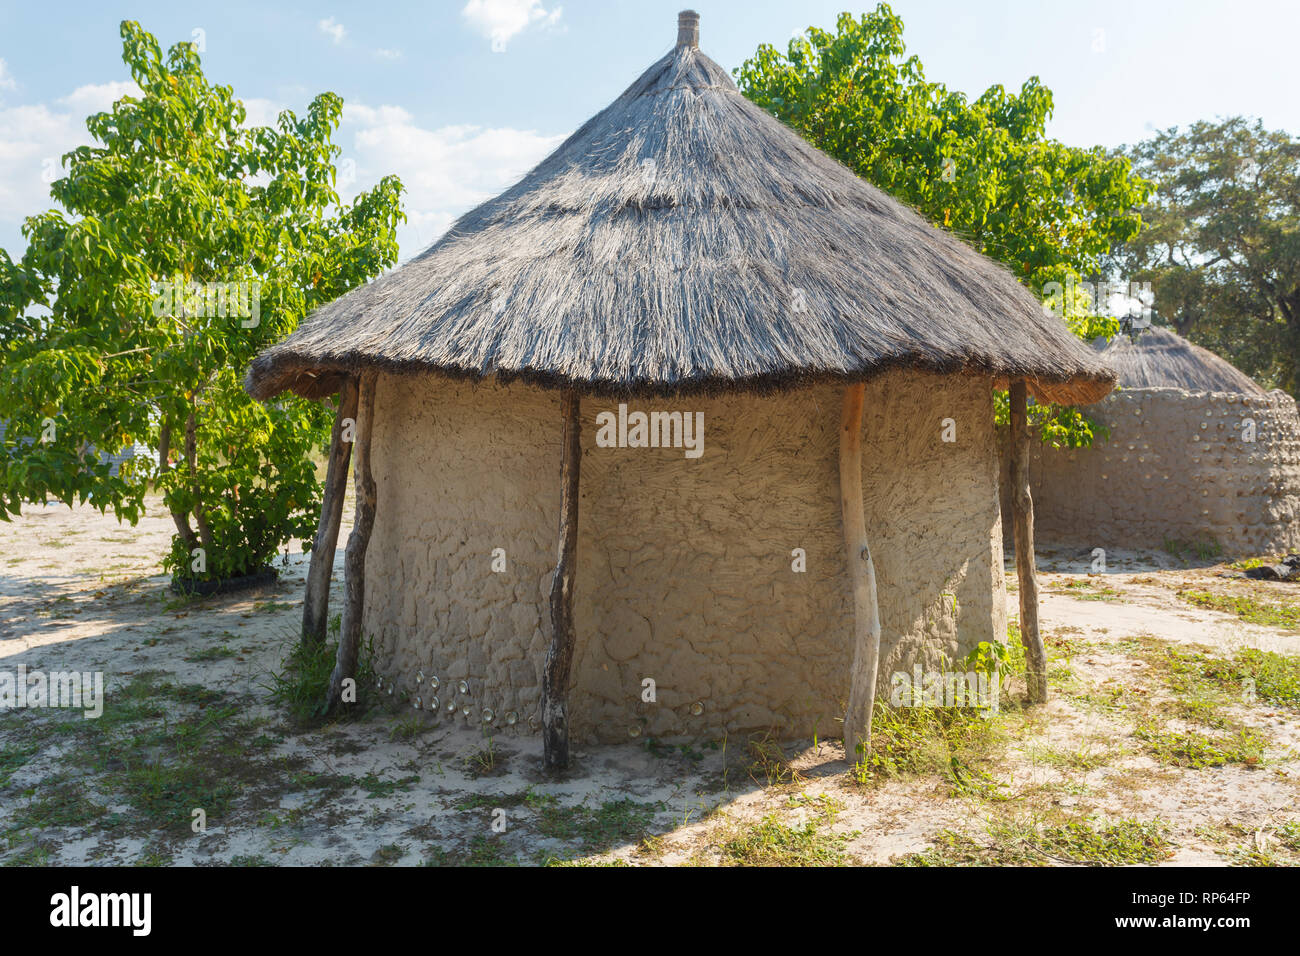 Gros plan de la cabane de boue ronde traditionnelle avec toit de chaume des indigènes du Botswana, Afrique Banque D'Images